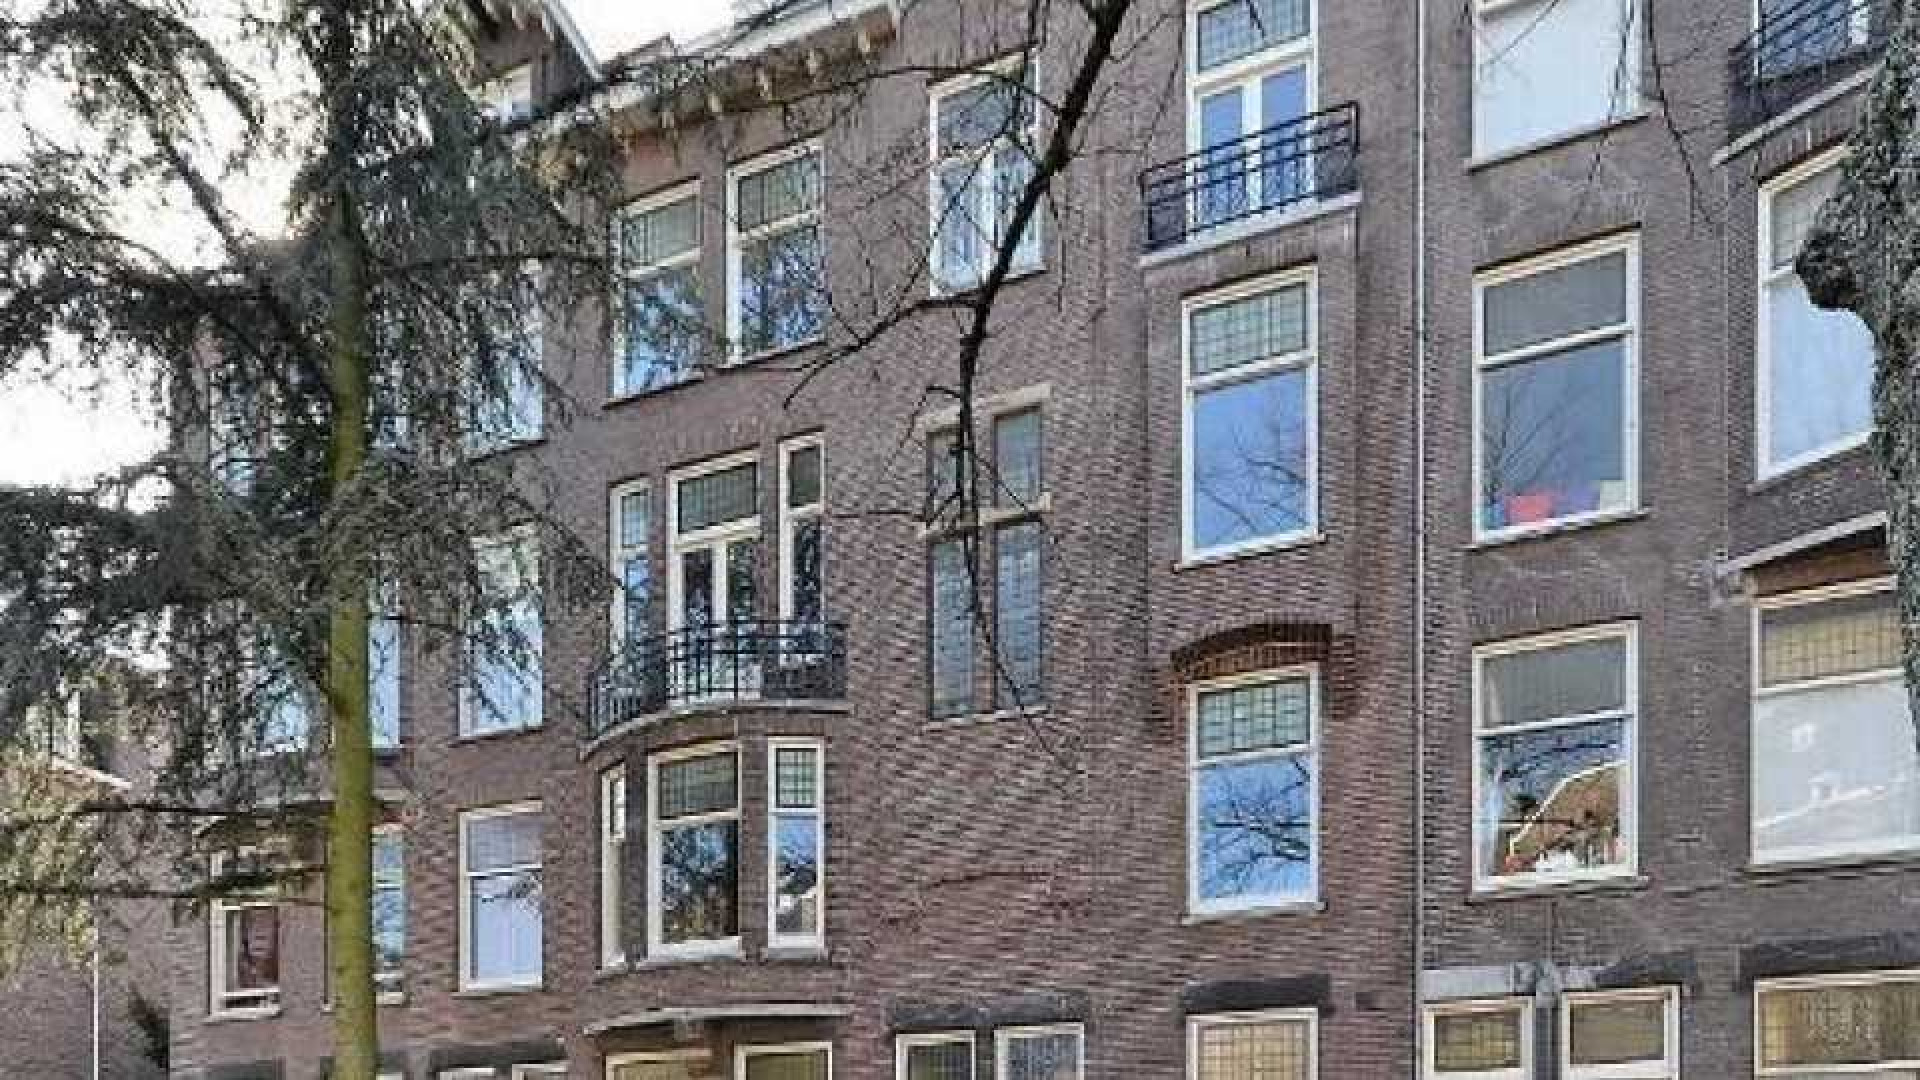 Frank Rijkaard zoekt huurder voor zijn benedenwoning. Zie foto's 1